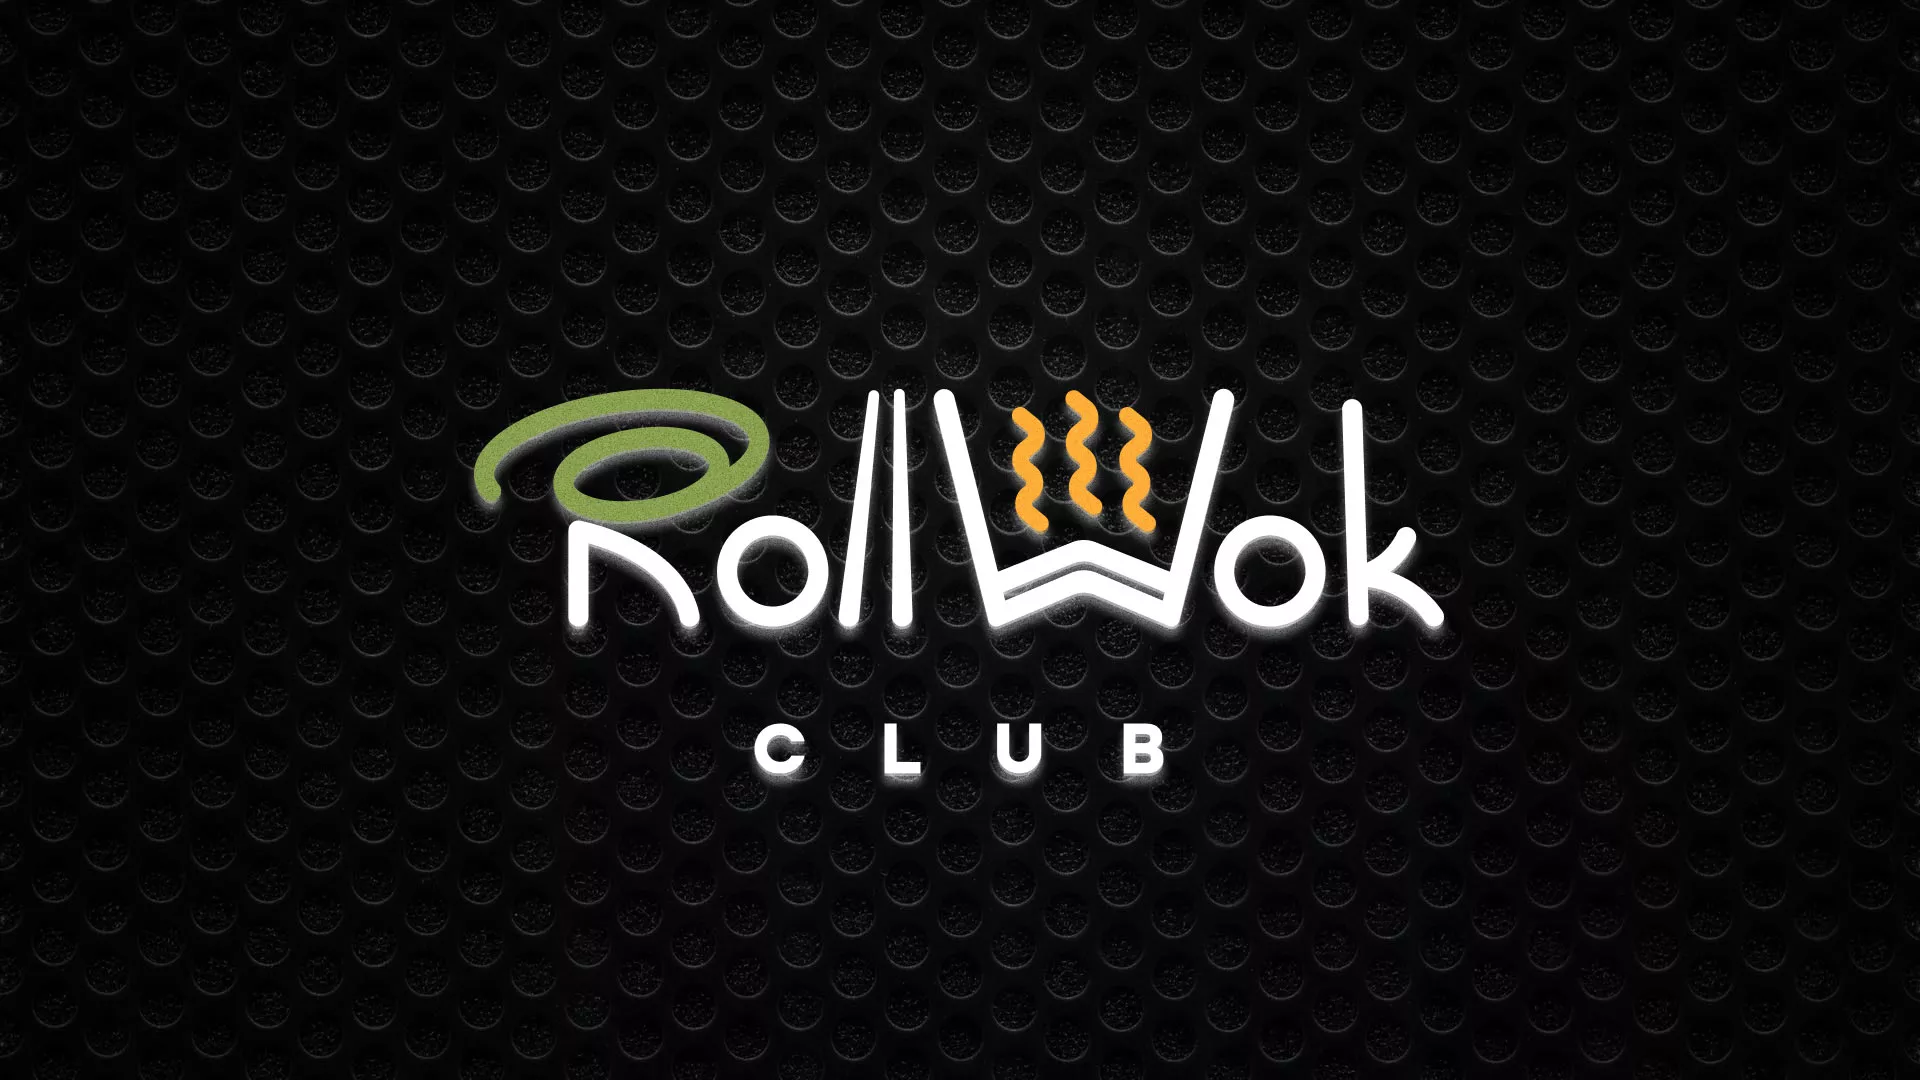 Брендирование торговых точек суши-бара «Roll Wok Club» в Тольятти